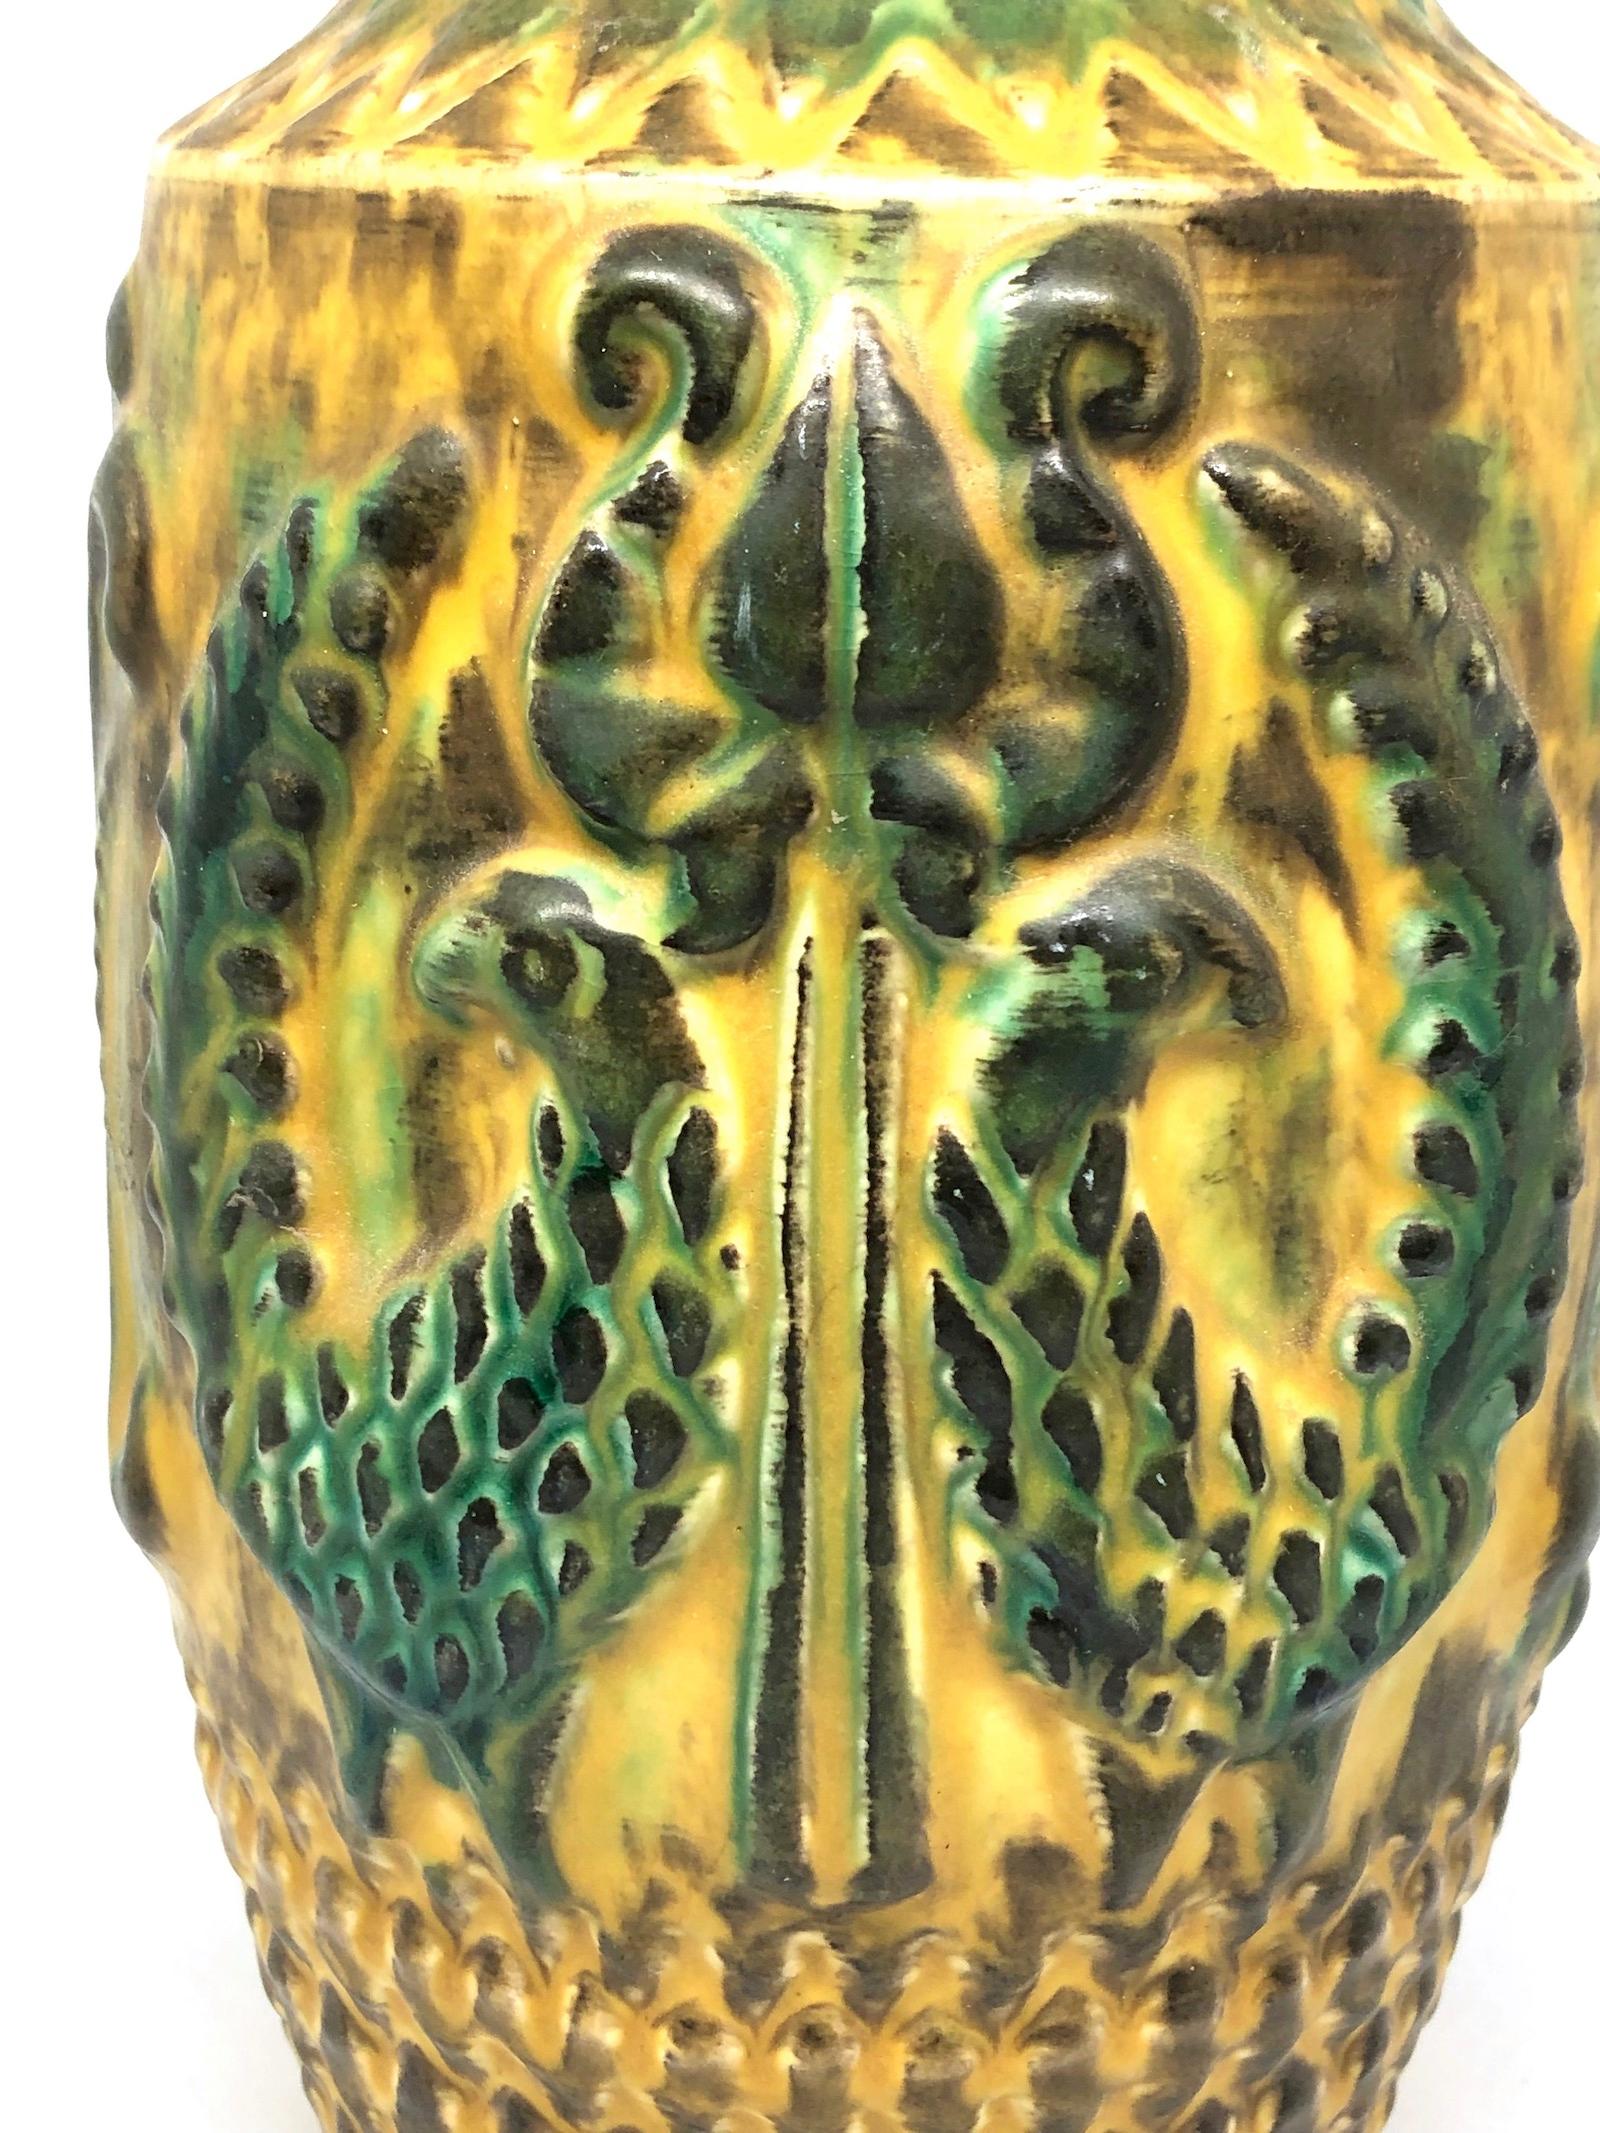 Un étonnant vase en poterie fabriqué en Allemagne, par Bay Ceramic, vers les années 1970. Le vase est en très bon état, sans éclats, ni fissures, ni morsures de puces. Signé comme sur la photo.